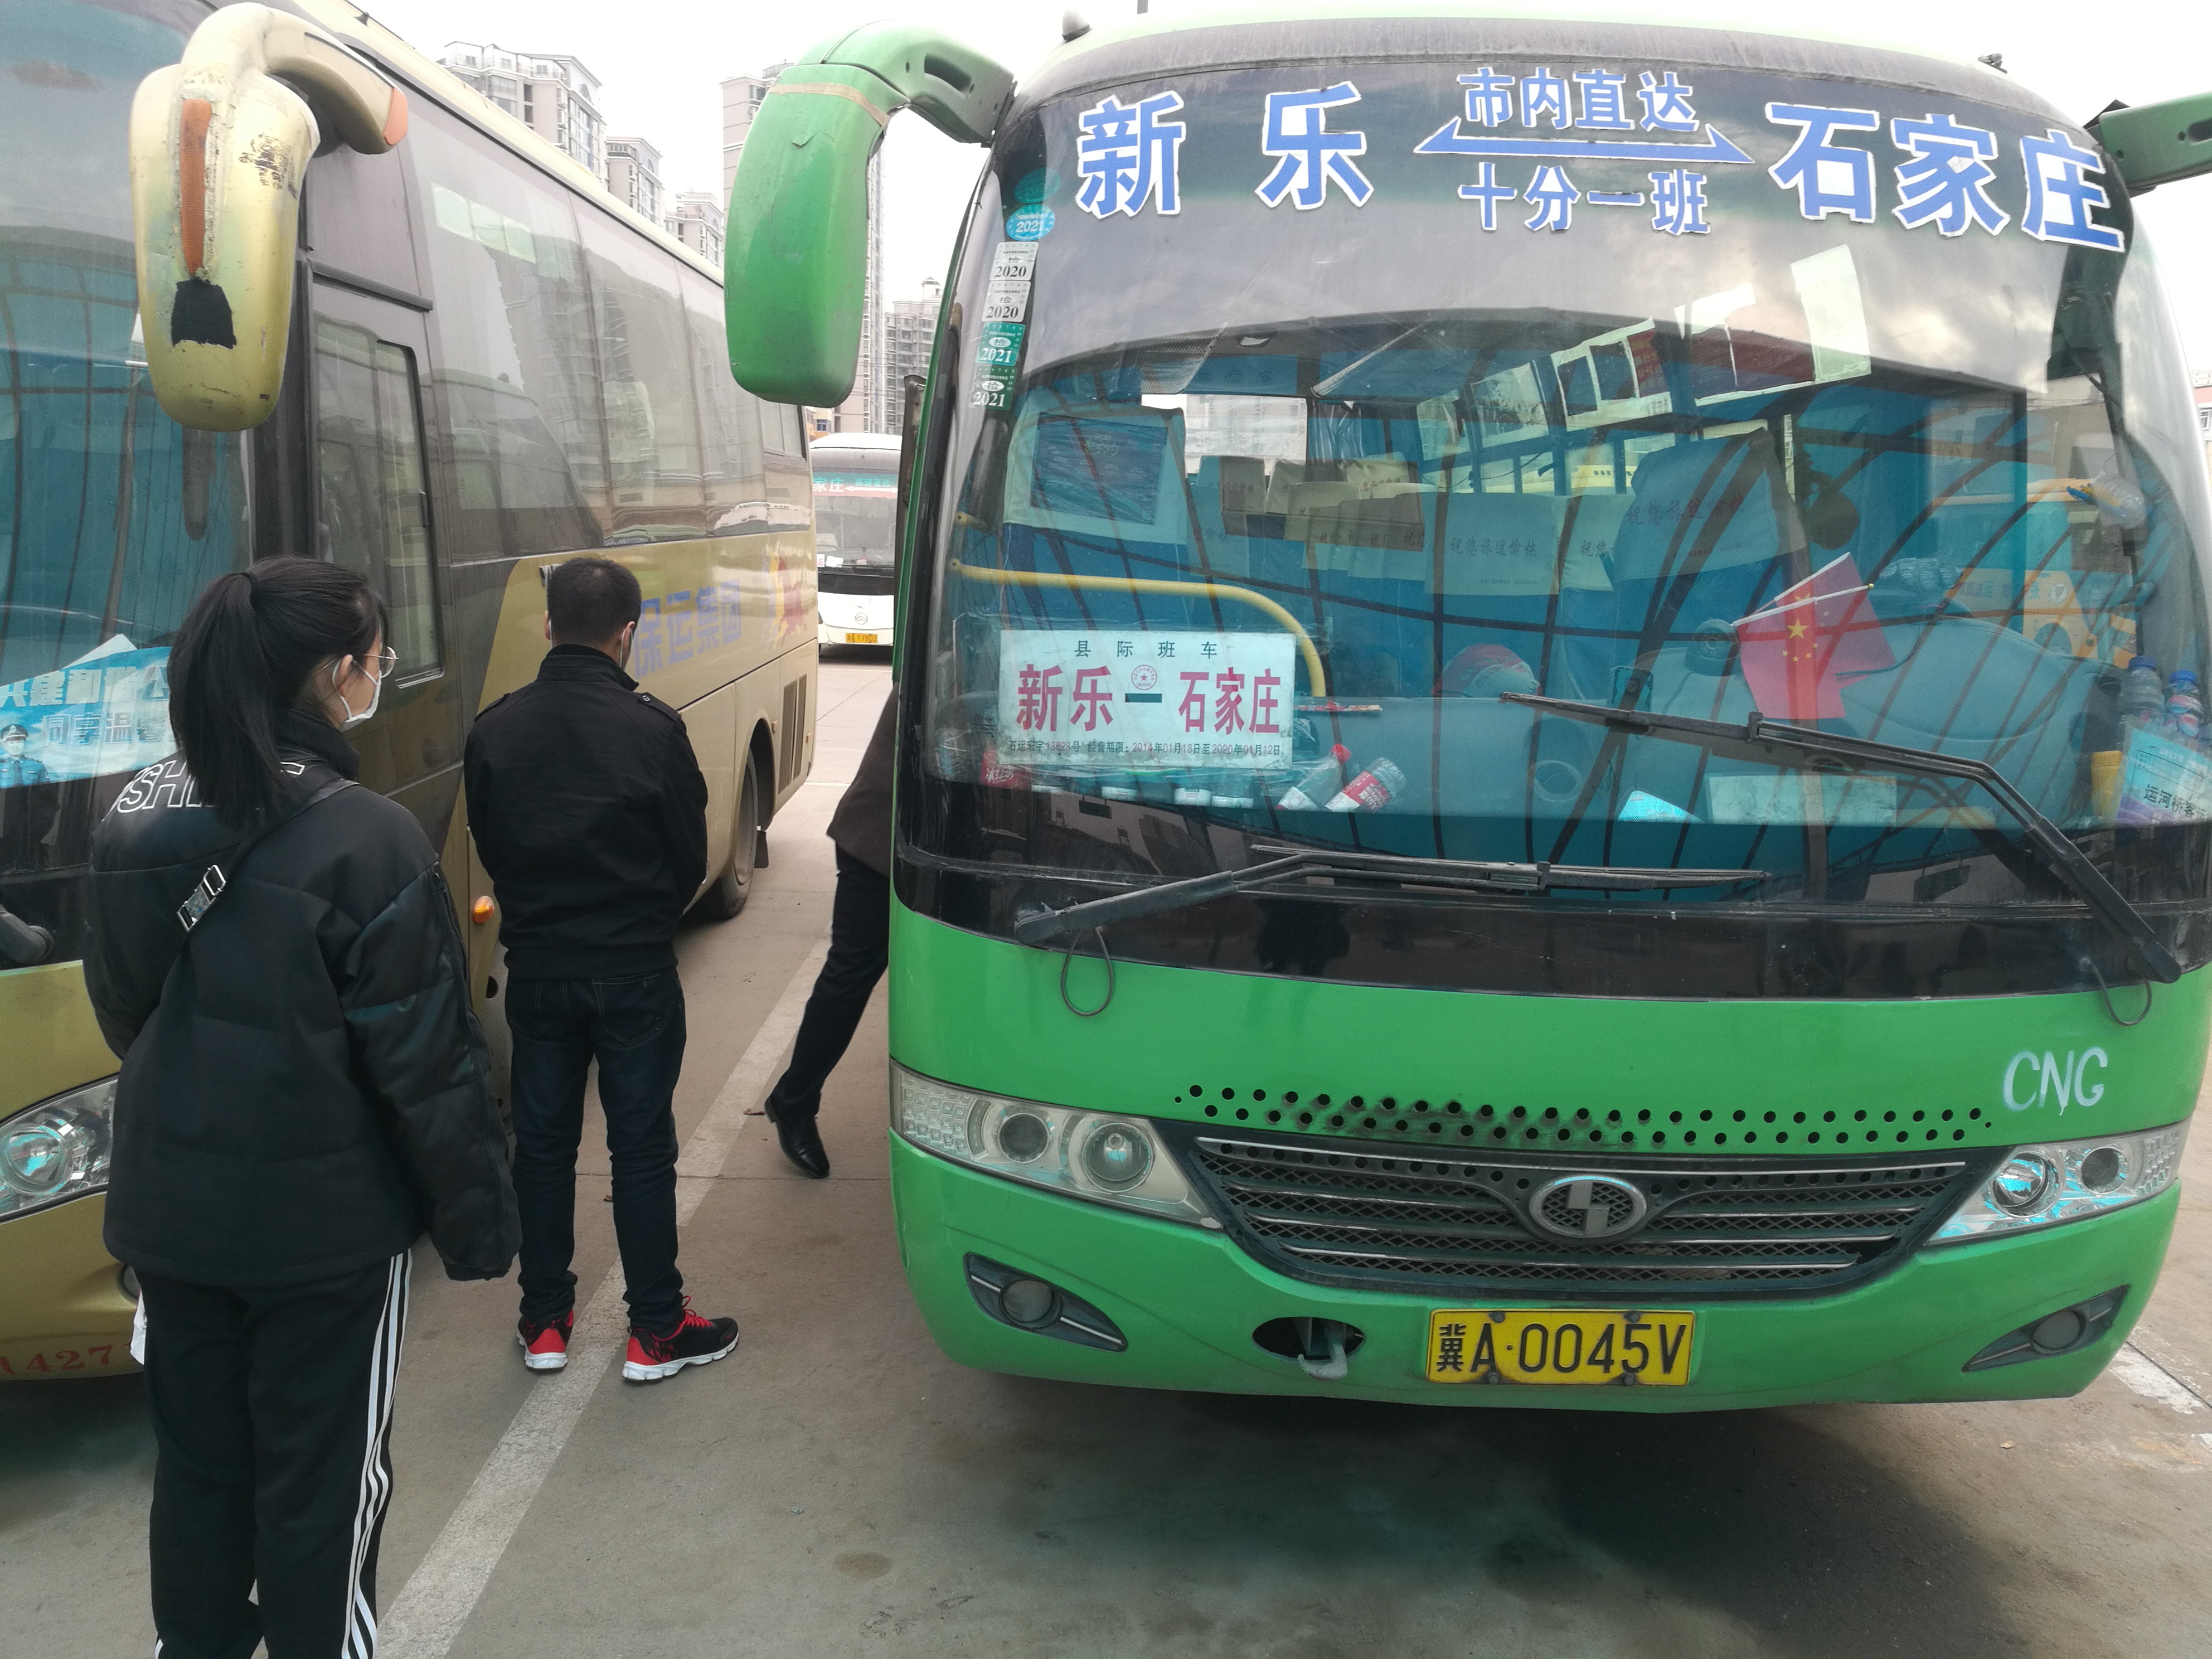 2月24日起,桥东客运站恢复石家庄至张北,集宁2条省际市际班线2部车2